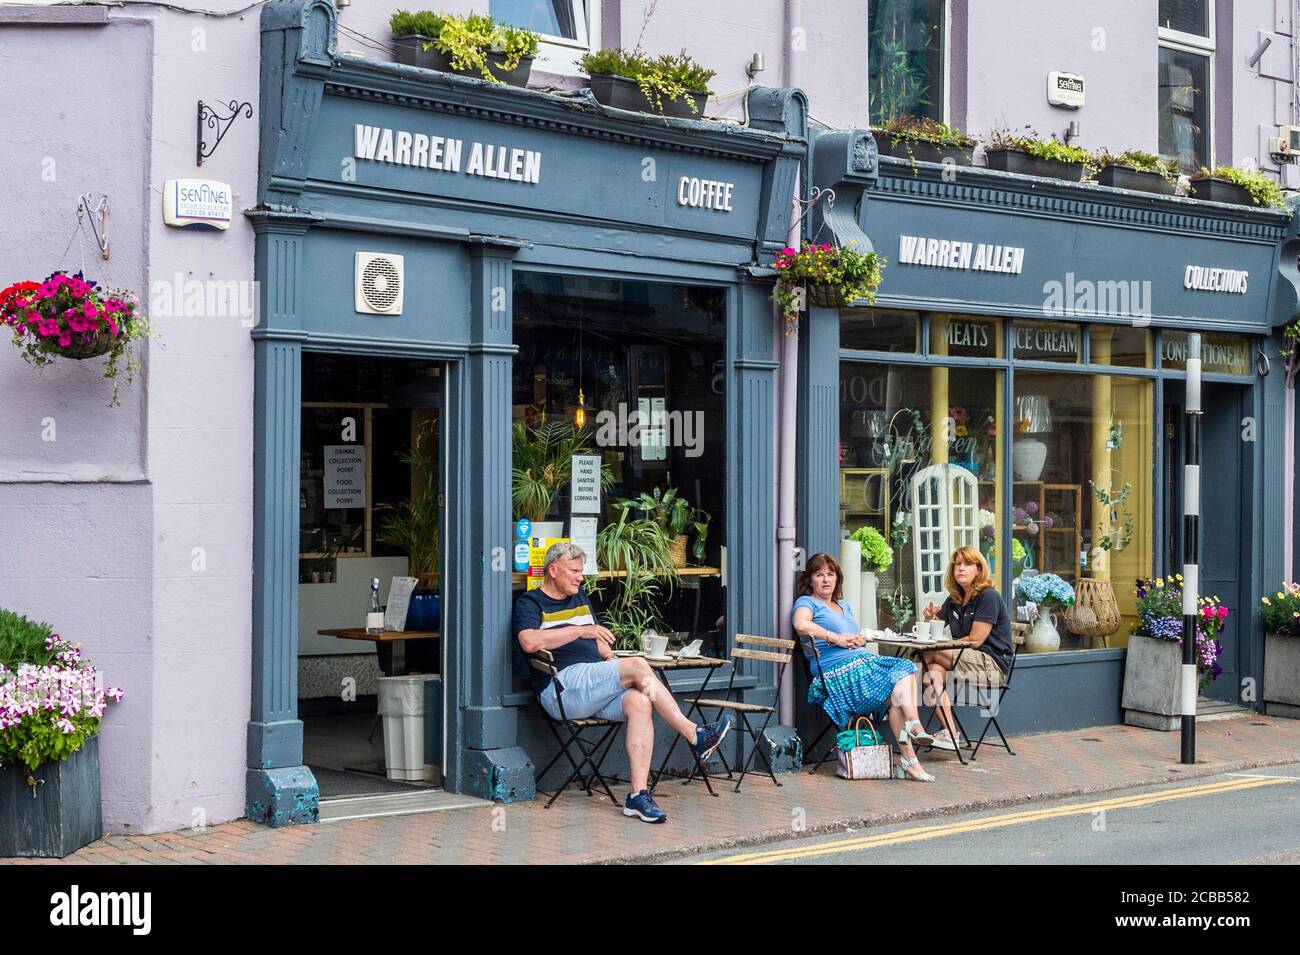 Bandon, West Cork, Irlande. 12 août 2020. Les places en plein air dans les cafés sont en train de devenir la nouvelle norme avec la pandémie COVID-19. Cet après-midi, les gens mangent et boivent à l'extérieur d'un café de Bandon. Crédit : AG News/Alay Live News Banque D'Images